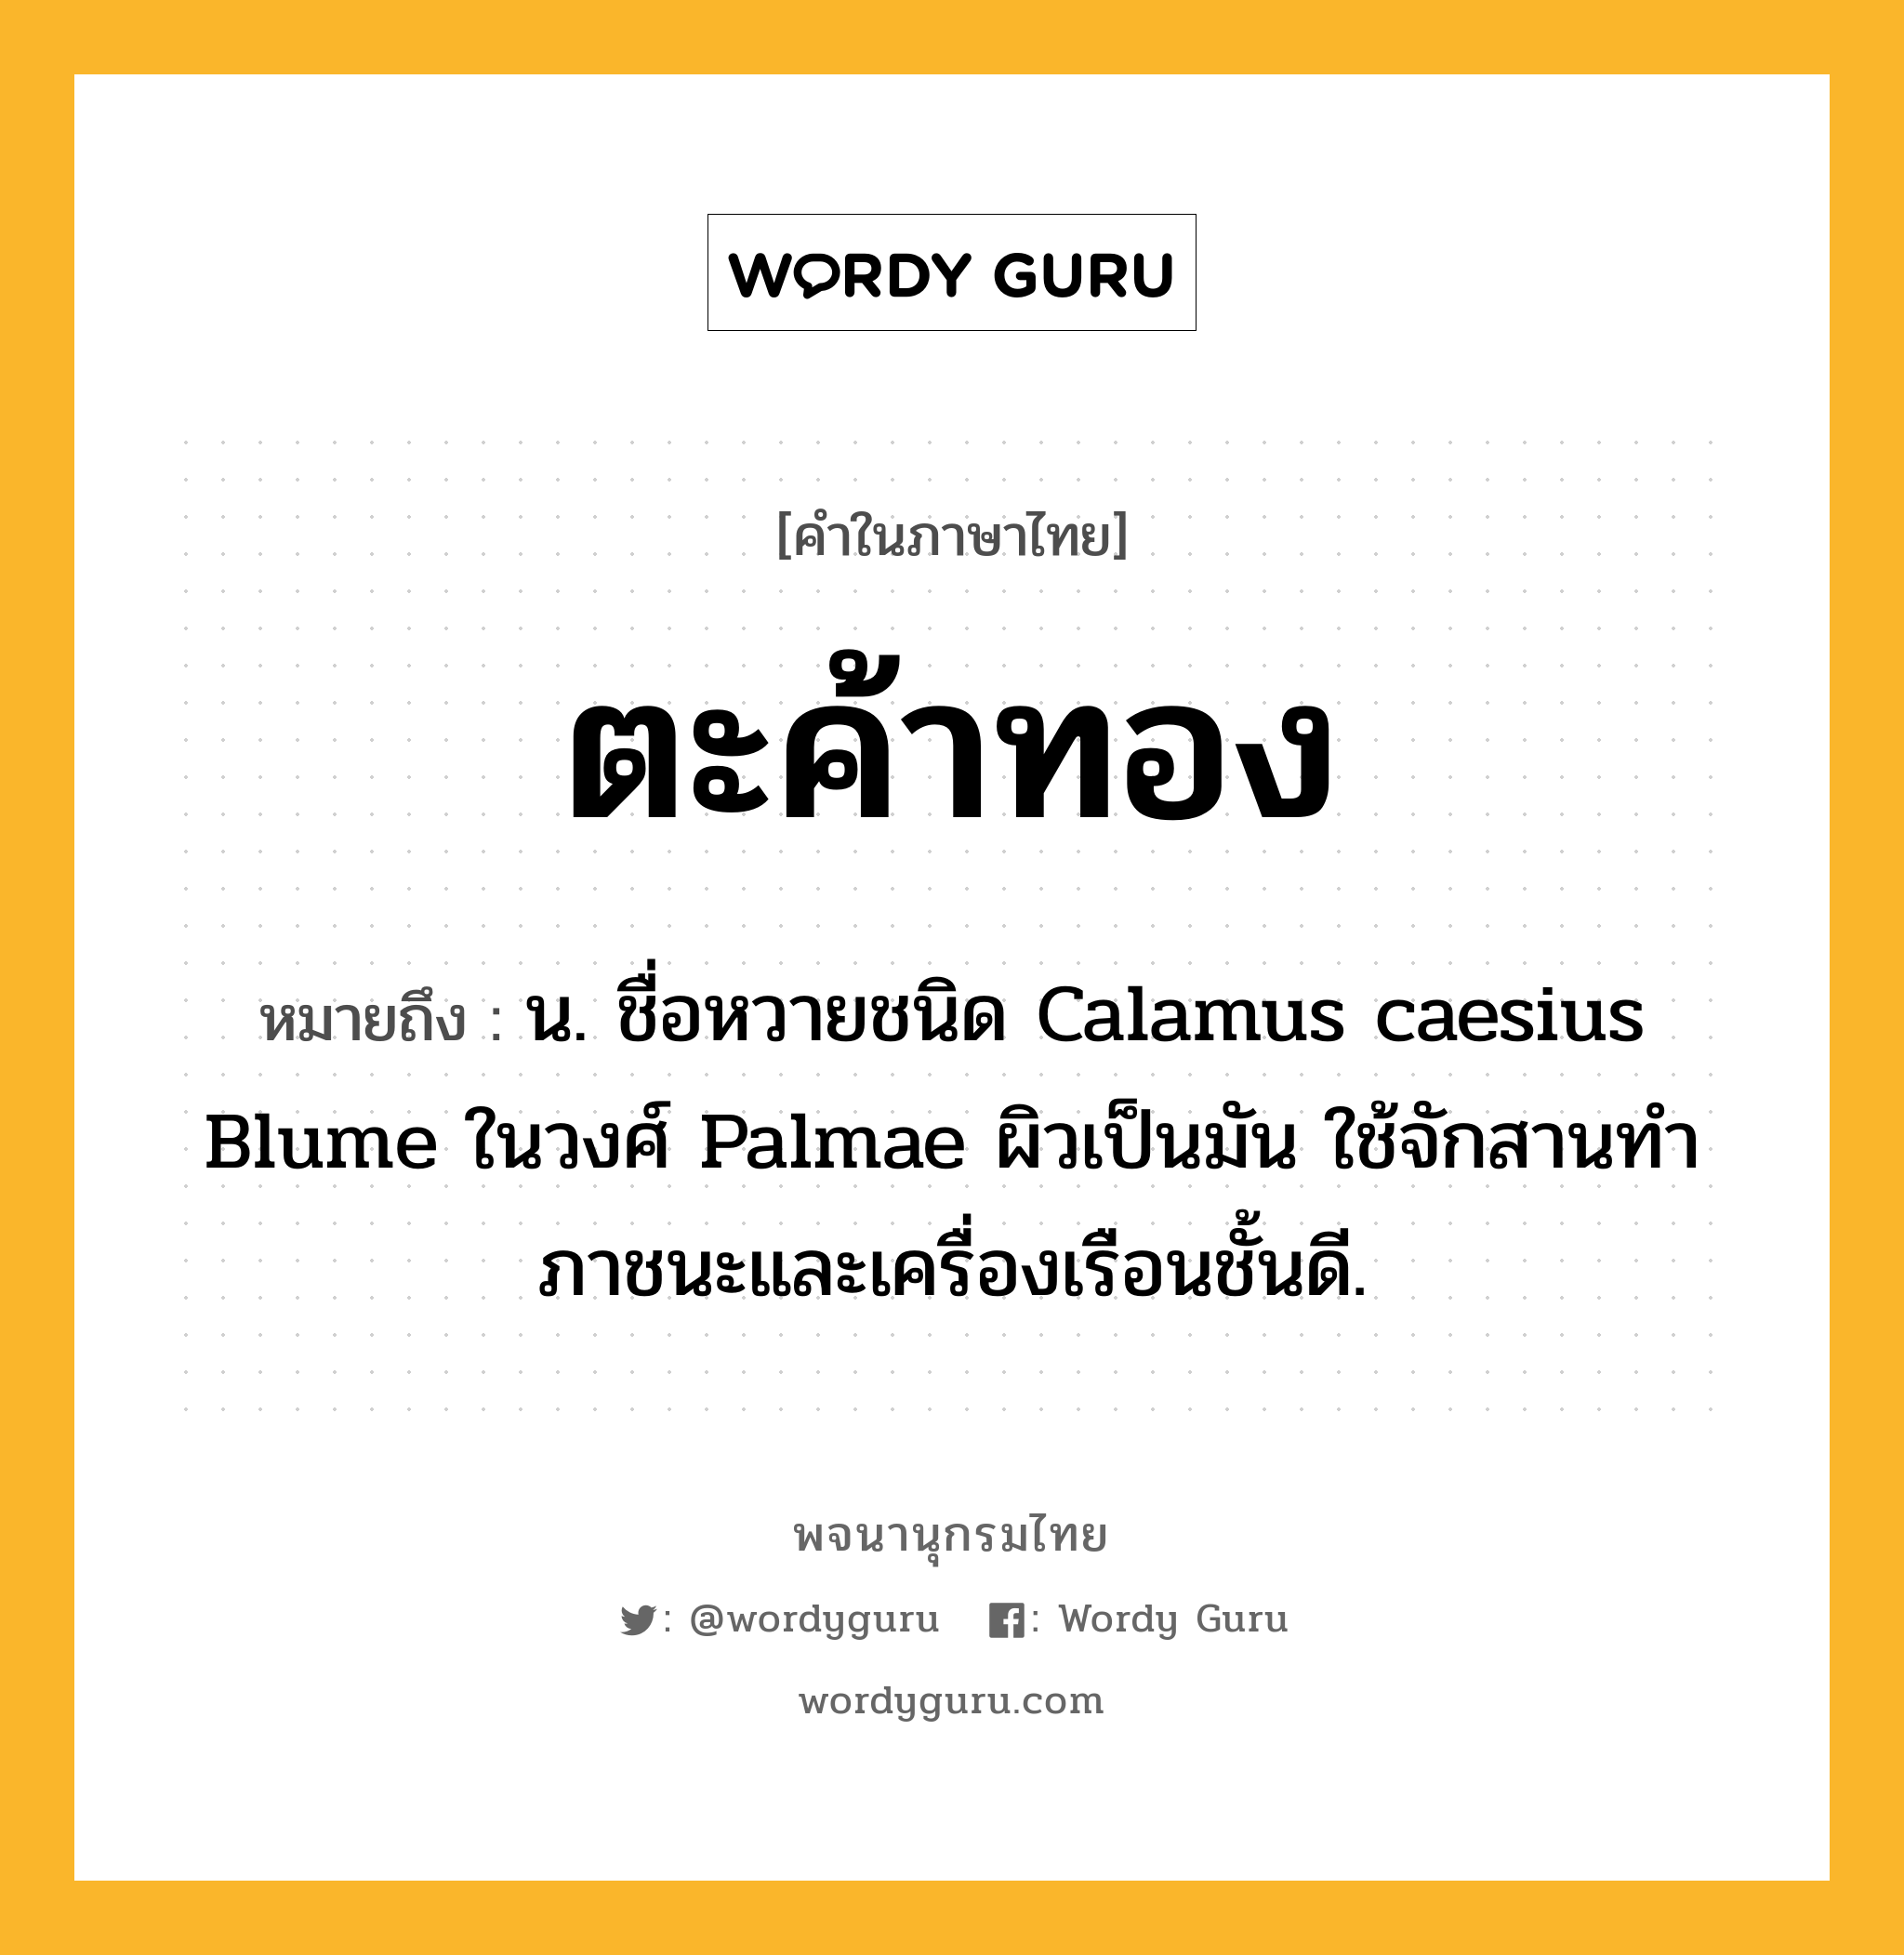 ตะค้าทอง หมายถึงอะไร?, คำในภาษาไทย ตะค้าทอง หมายถึง น. ชื่อหวายชนิด Calamus caesius Blume ในวงศ์ Palmae ผิวเป็นมัน ใช้จักสานทําภาชนะและเครื่องเรือนชั้นดี.